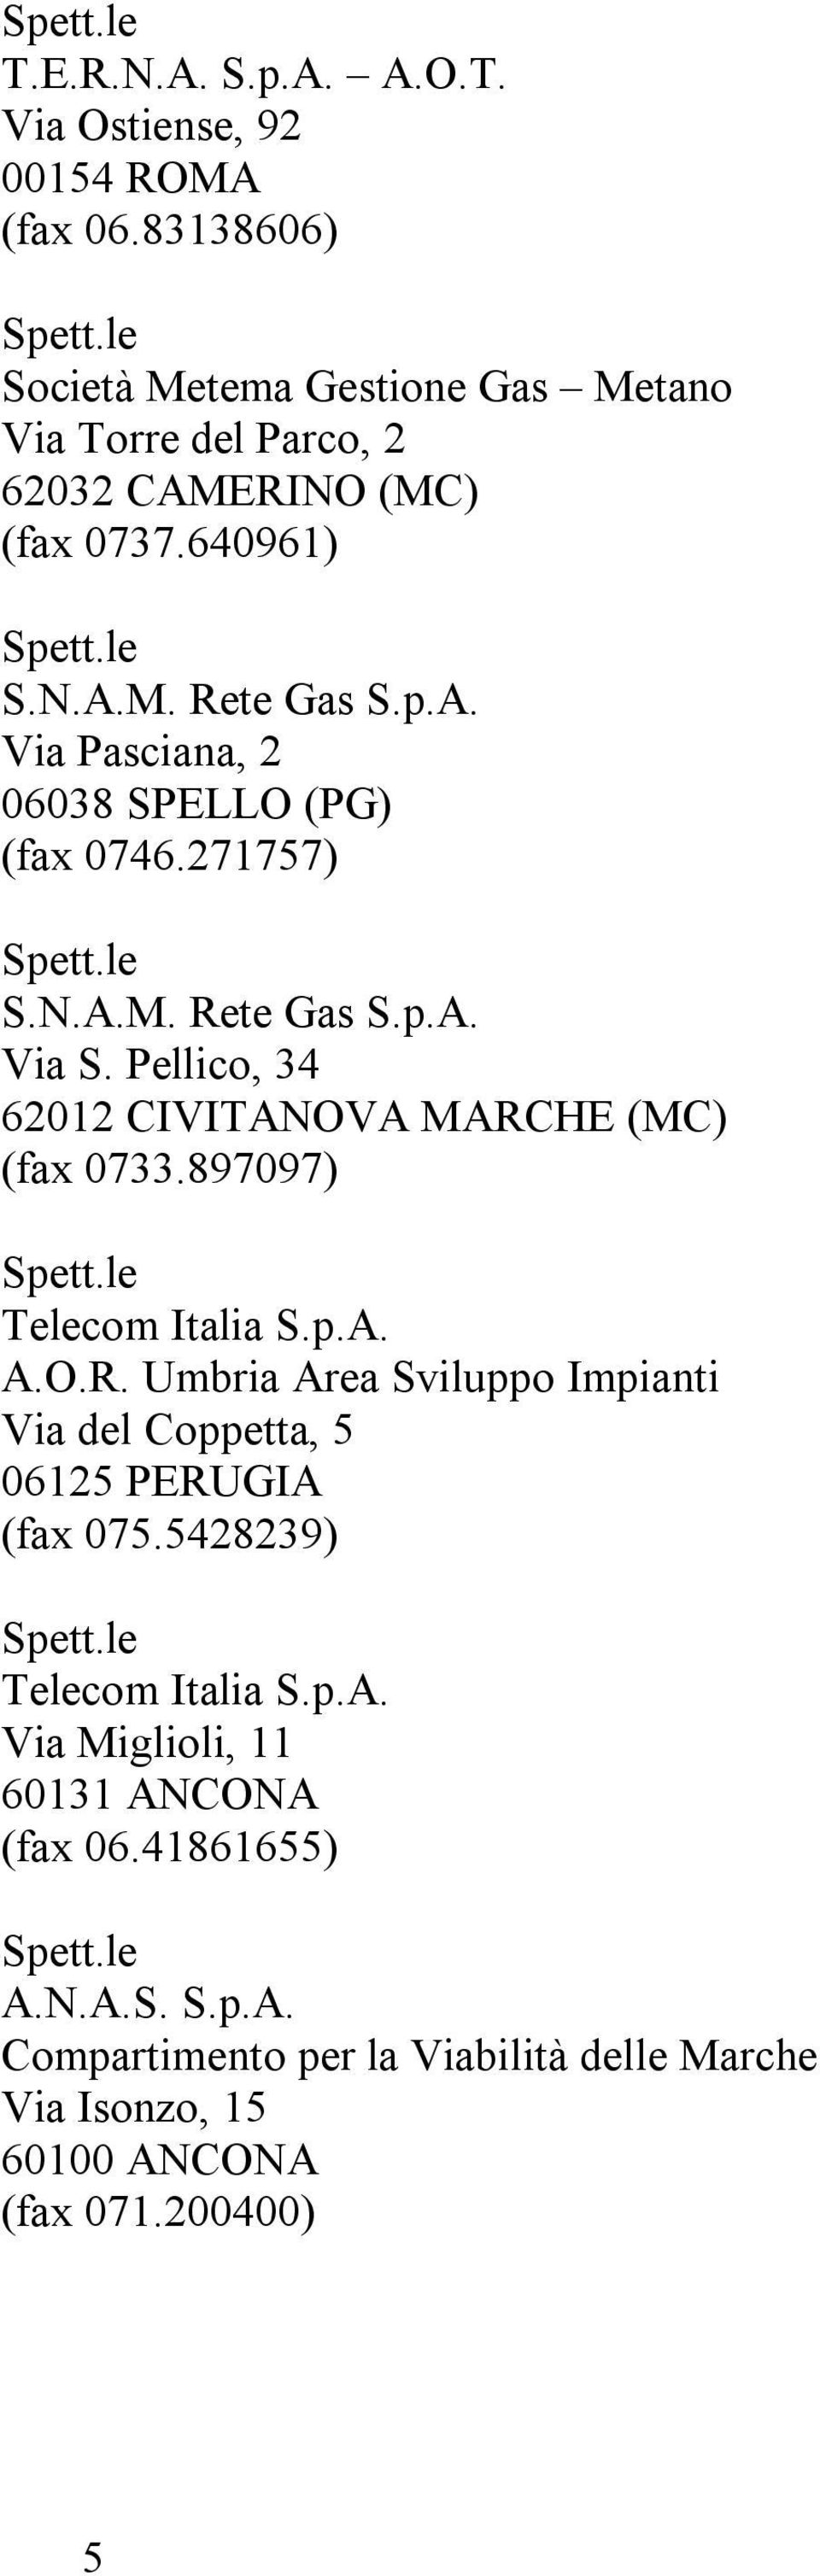 271757) S.N.A.M. Rete Gas S.p.A. Via S. Pellico, 34 62012 CIVITANOVA MARCHE (MC) (fax 0733.897097) Telecom Italia S.p.A. A.O.R. Umbria Area Sviluppo Impianti Via del Coppetta, 5 06125 PERUGIA (fax 075.